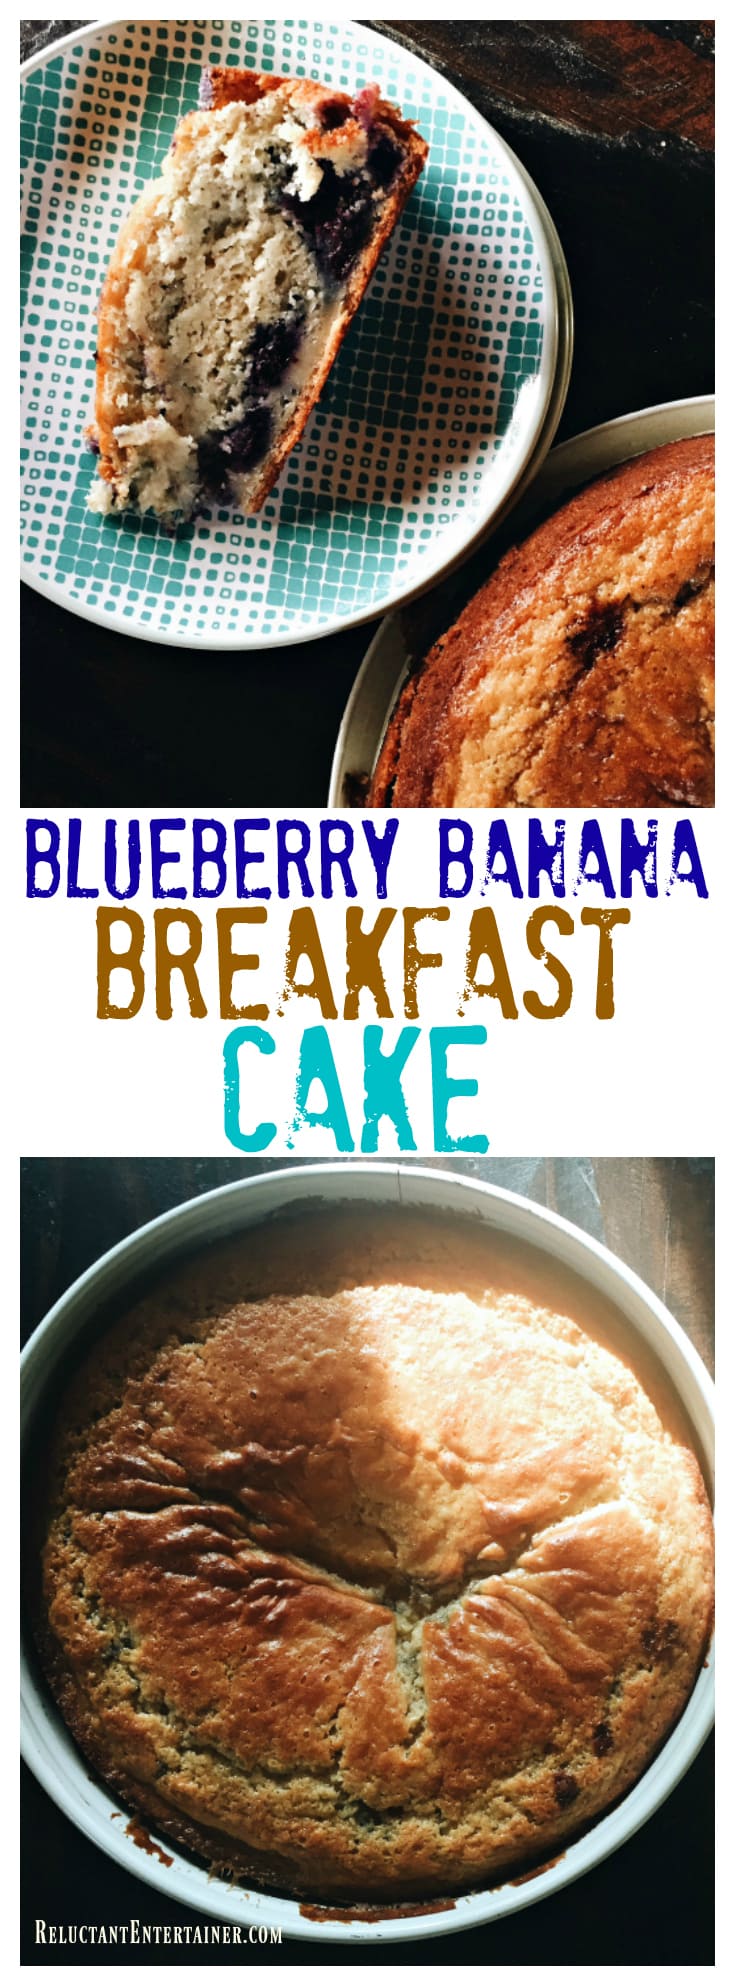 Blueberry Banana Breakfast Cake